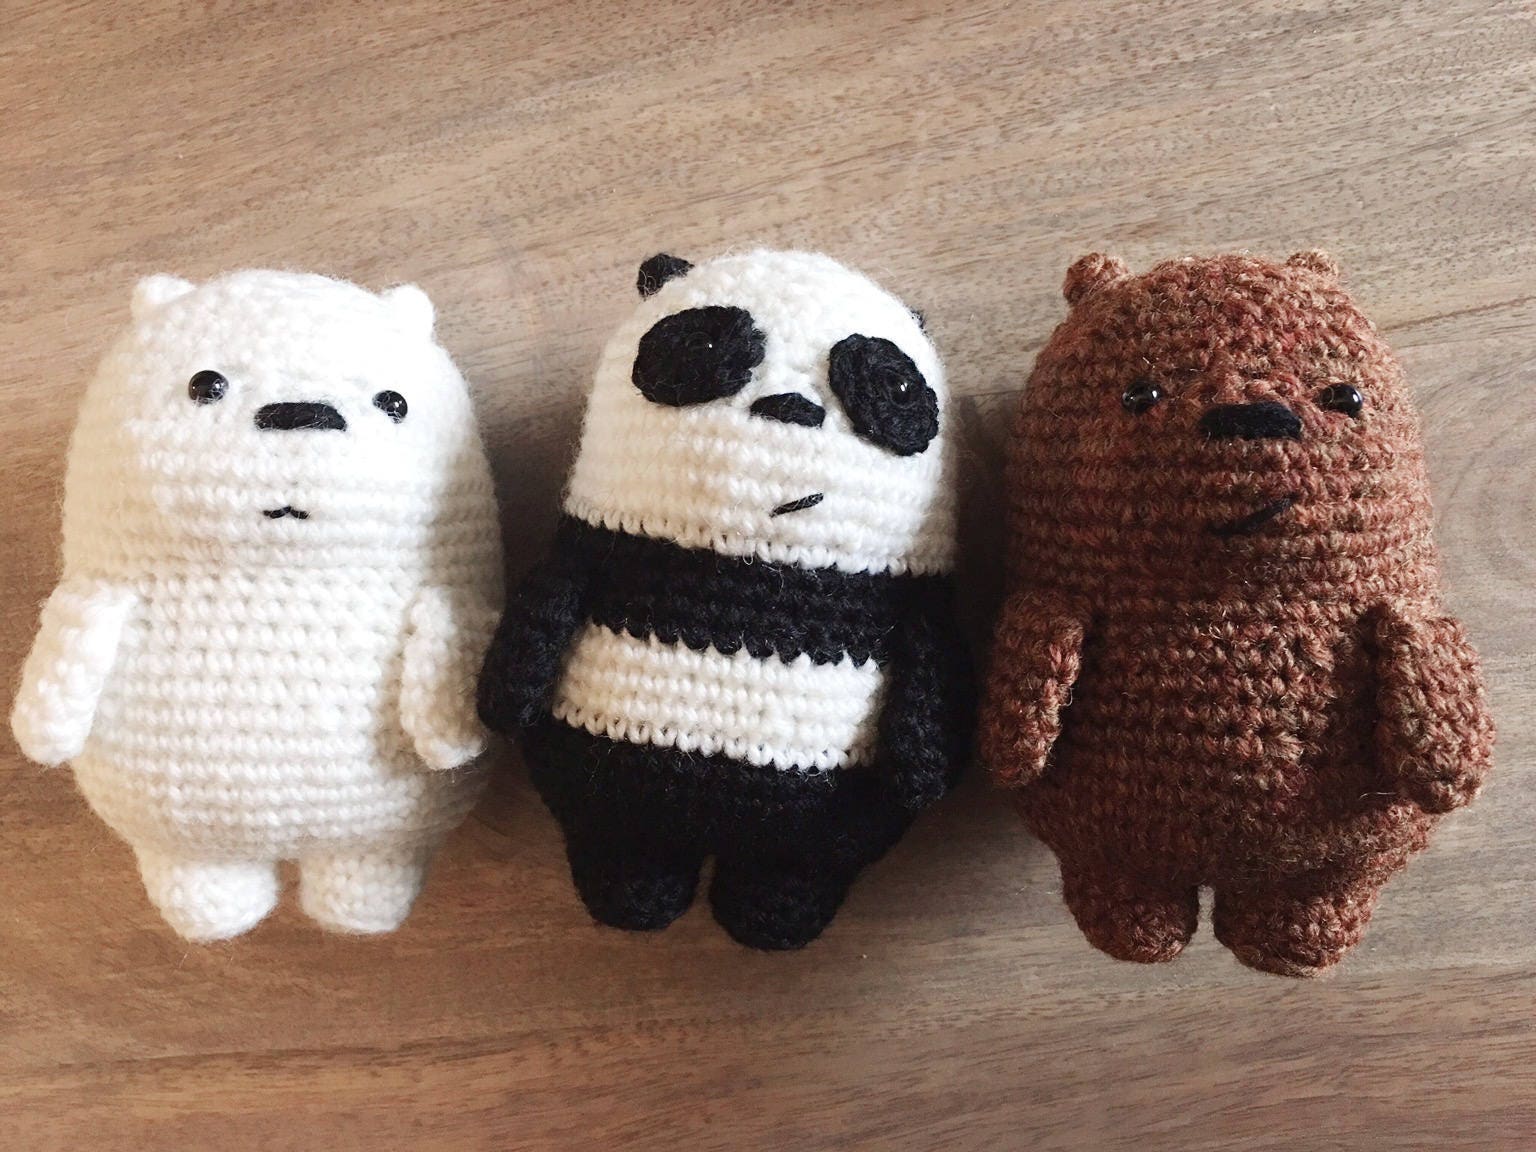 Crochet pattern We Bare Bears Inspired Baby Bear Etsy